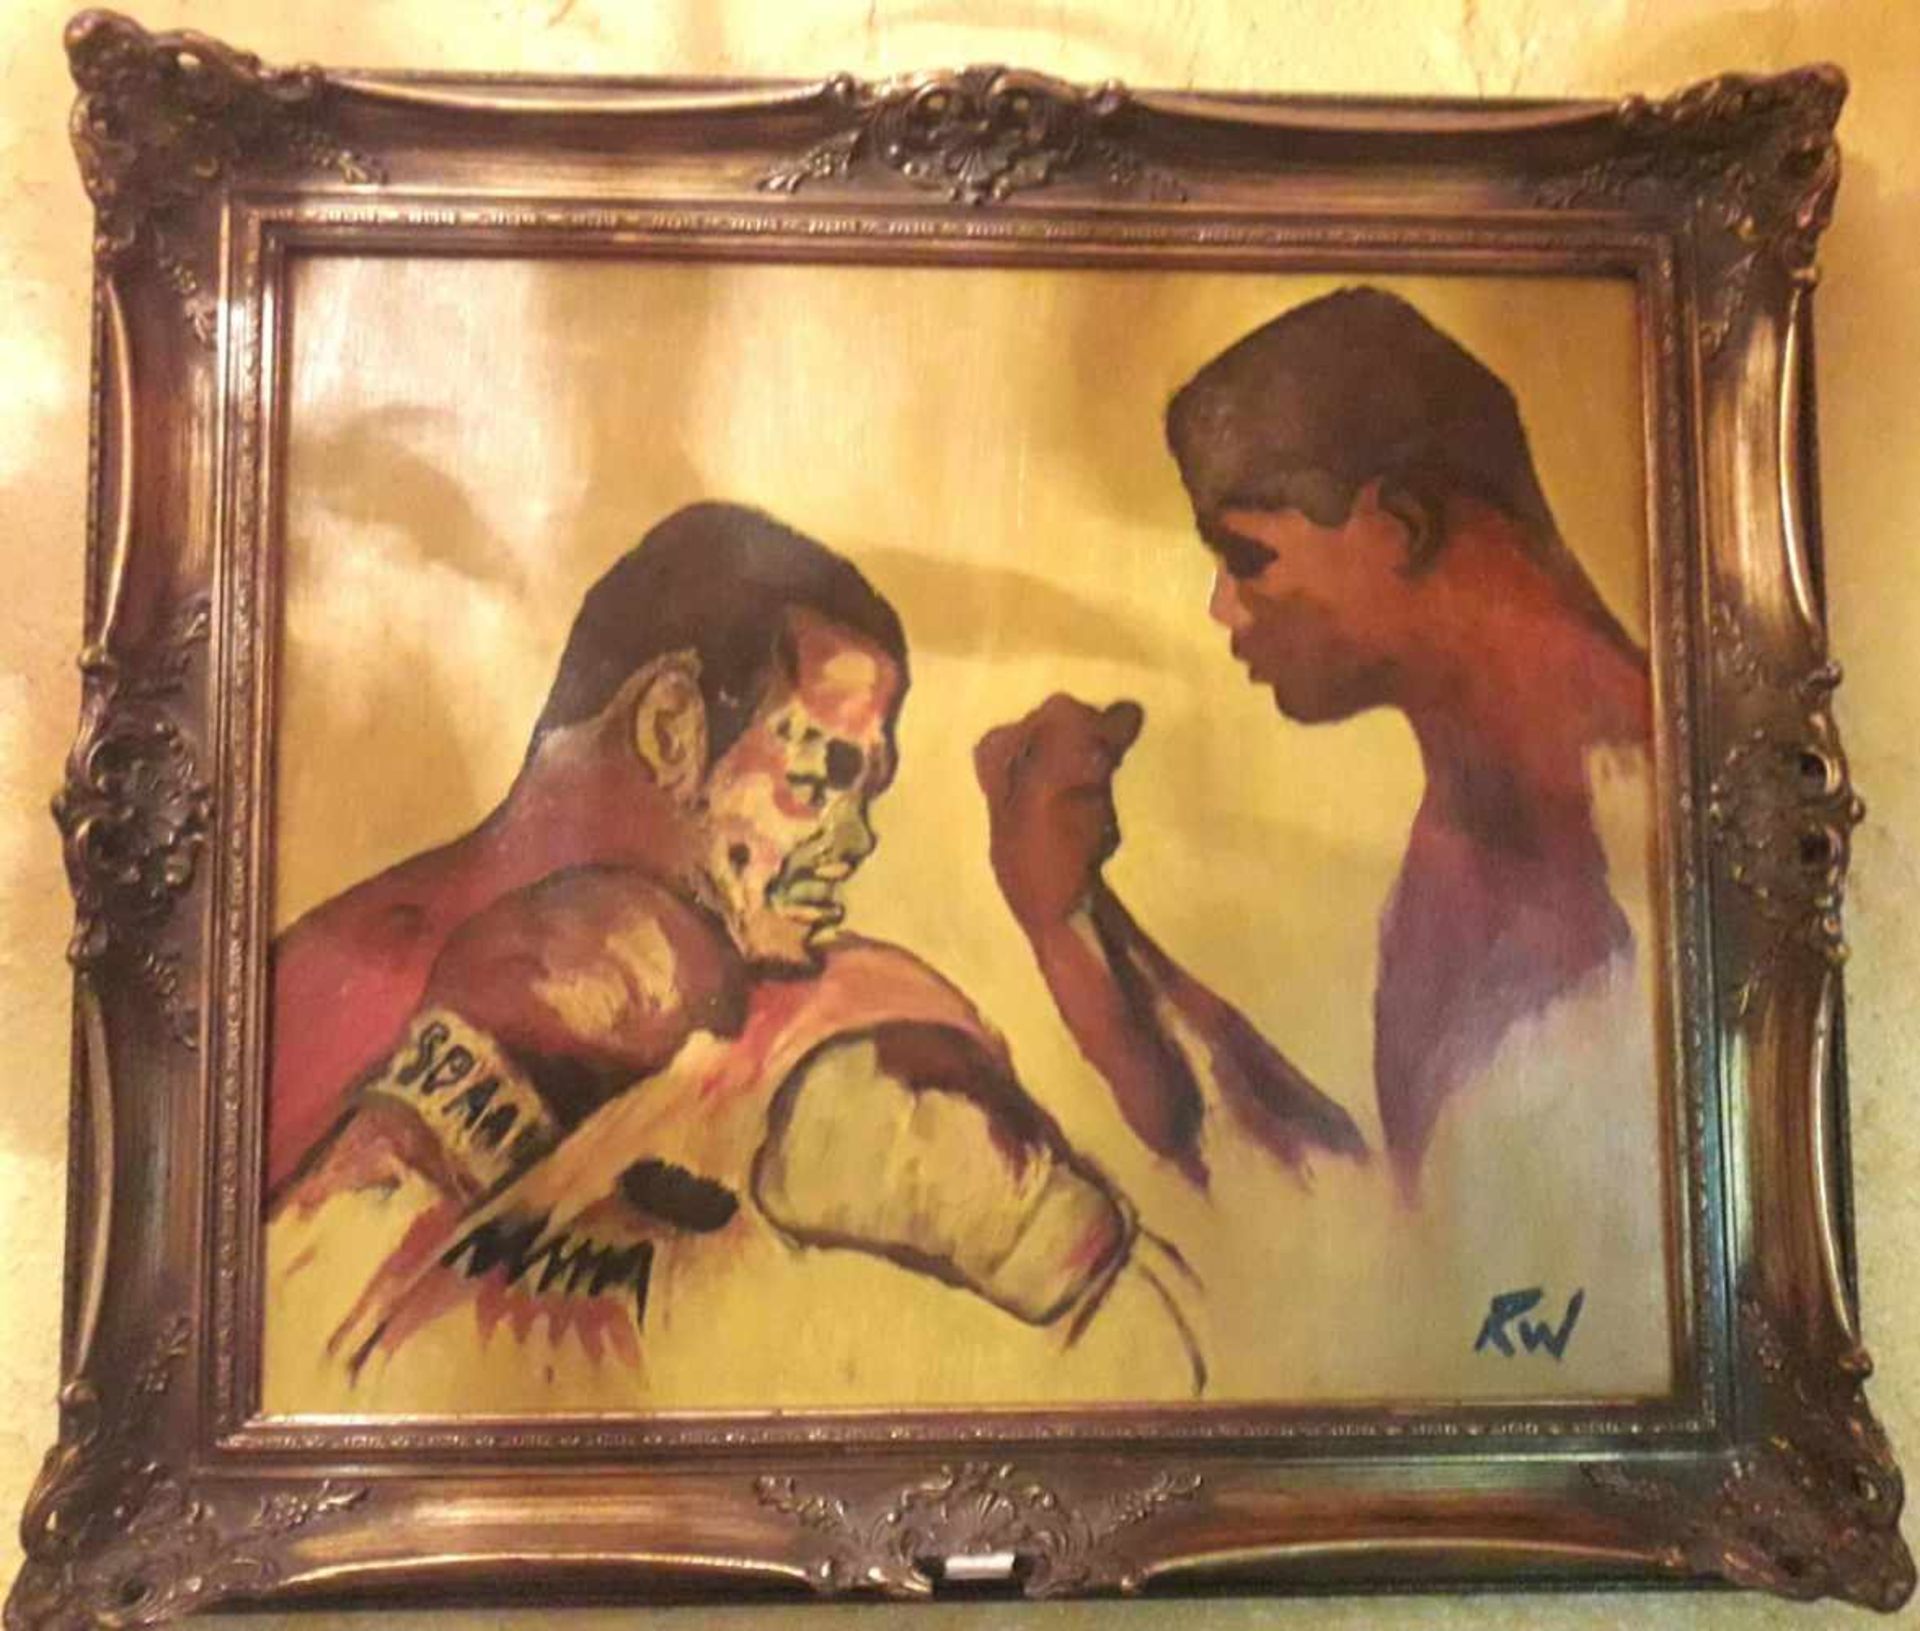 Gemälde von René Weller. "Muhammad Ali und Joe Frazier"Öl auf Leinwand. René Weller nach dem